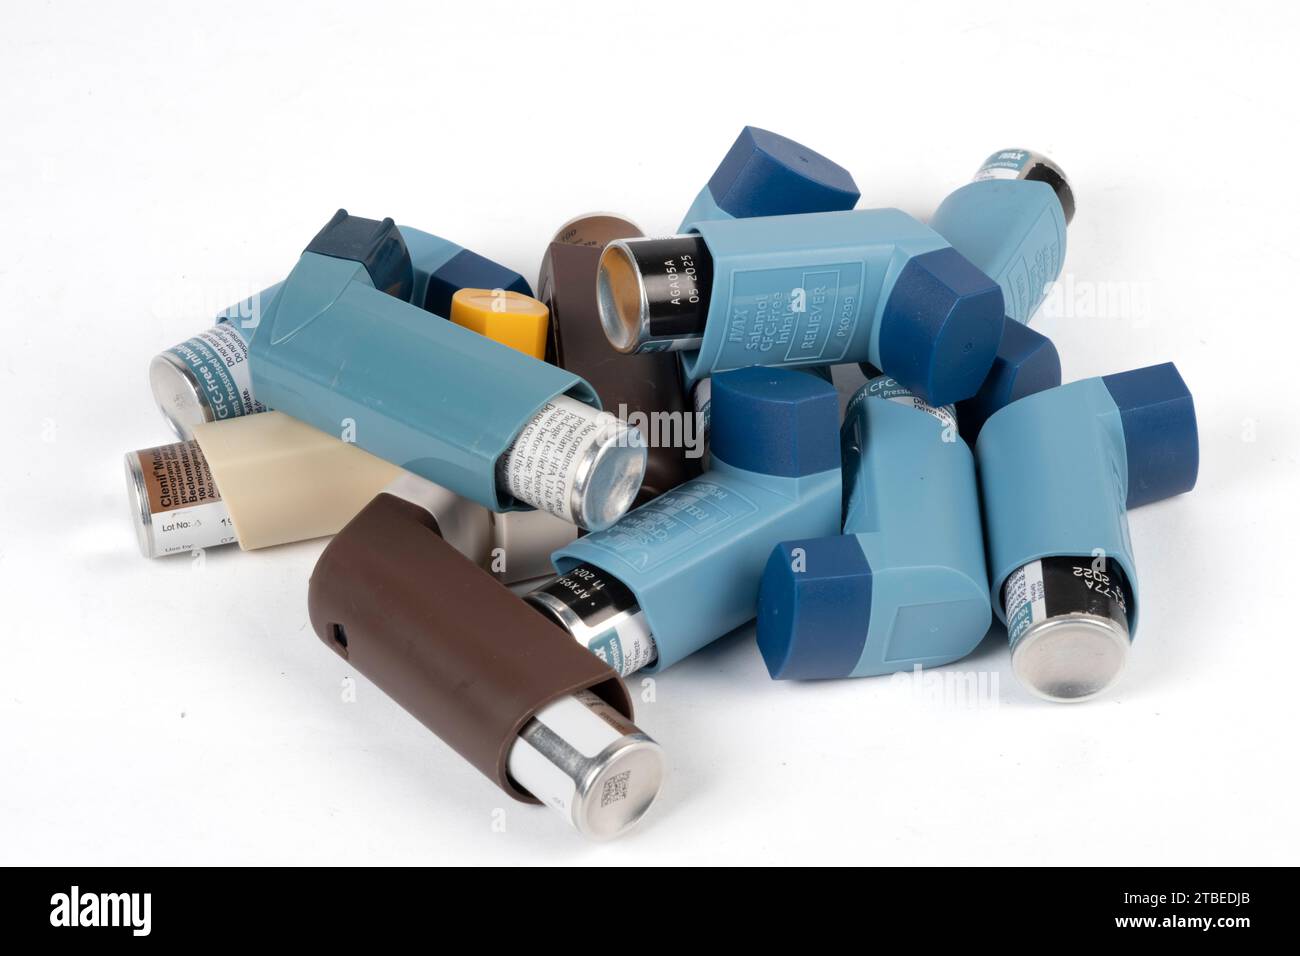 Stapel von MDI-Inhalatoren (Dosierinhalatoren) Asthma-Inhalatoren, die als unerwünscht für die Umwelt gelten und durch DPI (Trockenpulverinhalator) ersetzt werden Stockfoto